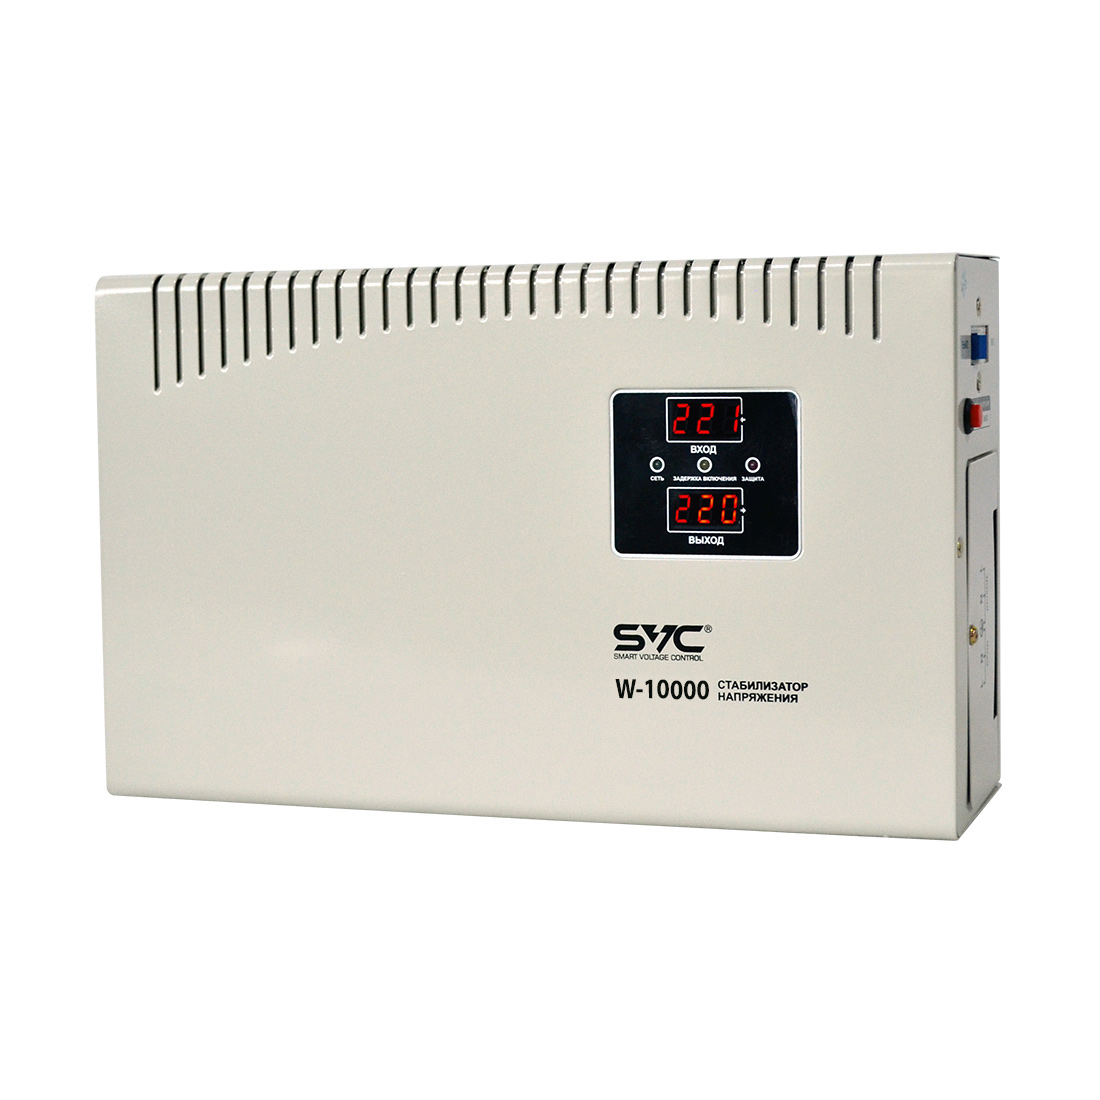 Стабилизатор (AVR), SVC, W-10000, 10000ВА/6000Вт, Диапазон работы AVR: 140-260В, Выходное напряжение